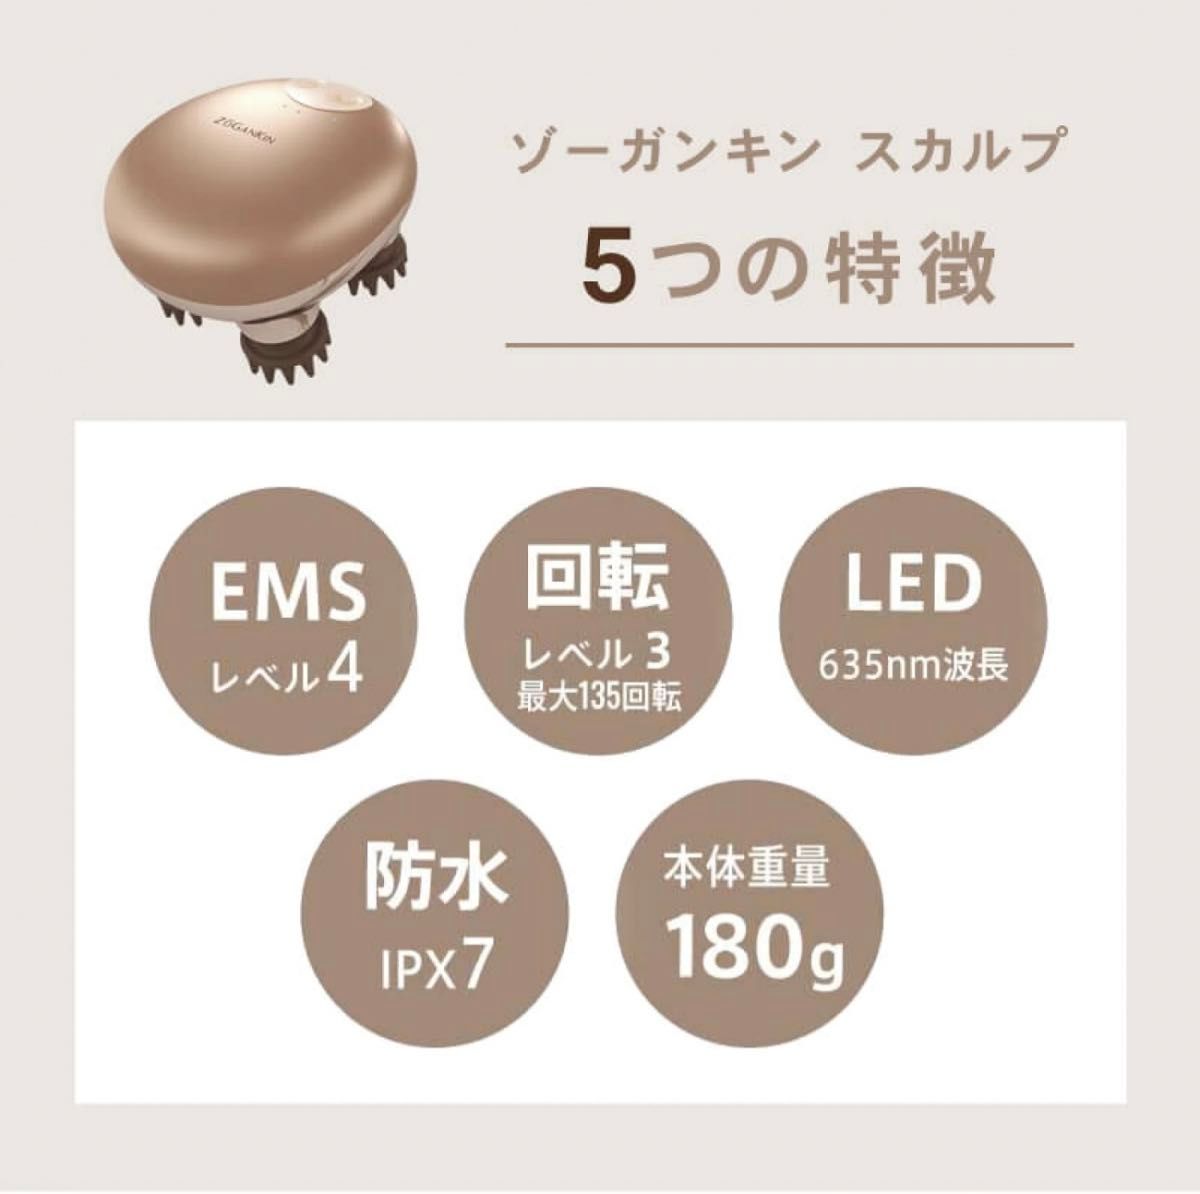 【新品】ゾーガンキンスカルプ EMS ヘッドスパ 頭皮 頭皮ケア